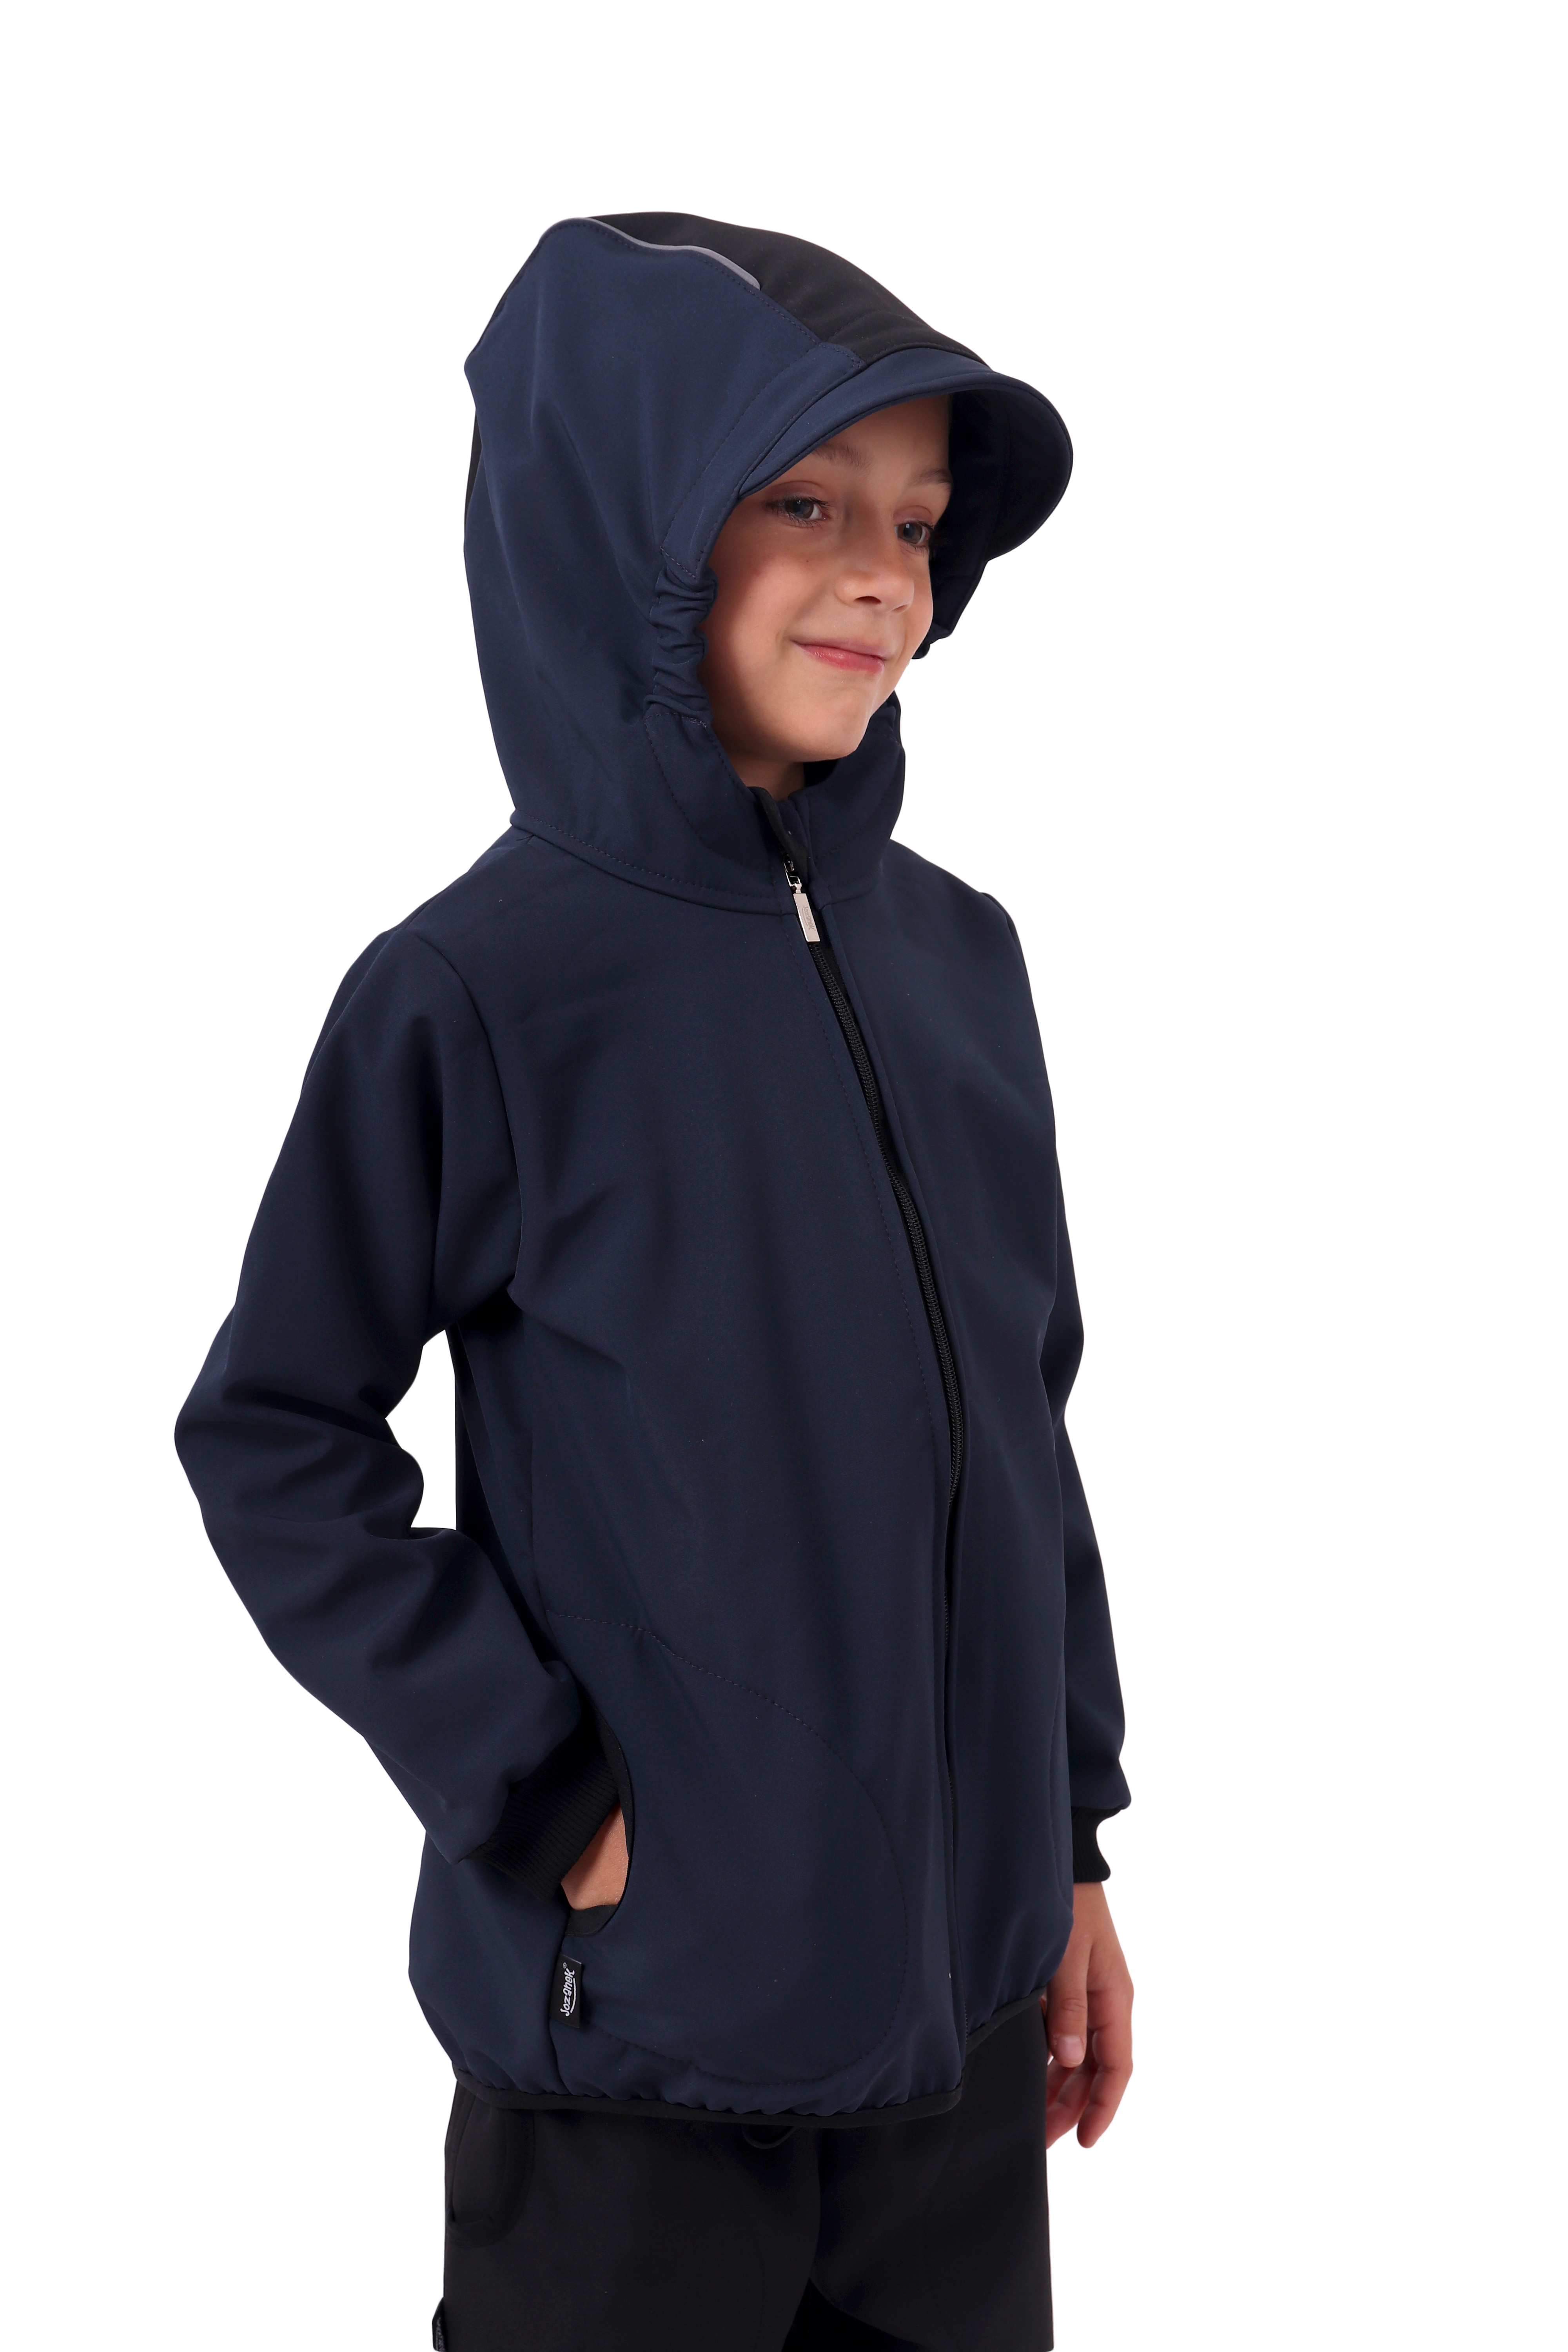 Dětská softshellová bunda, tmavě modrá s černými doplňky, STARŠÍ KOLEKCE